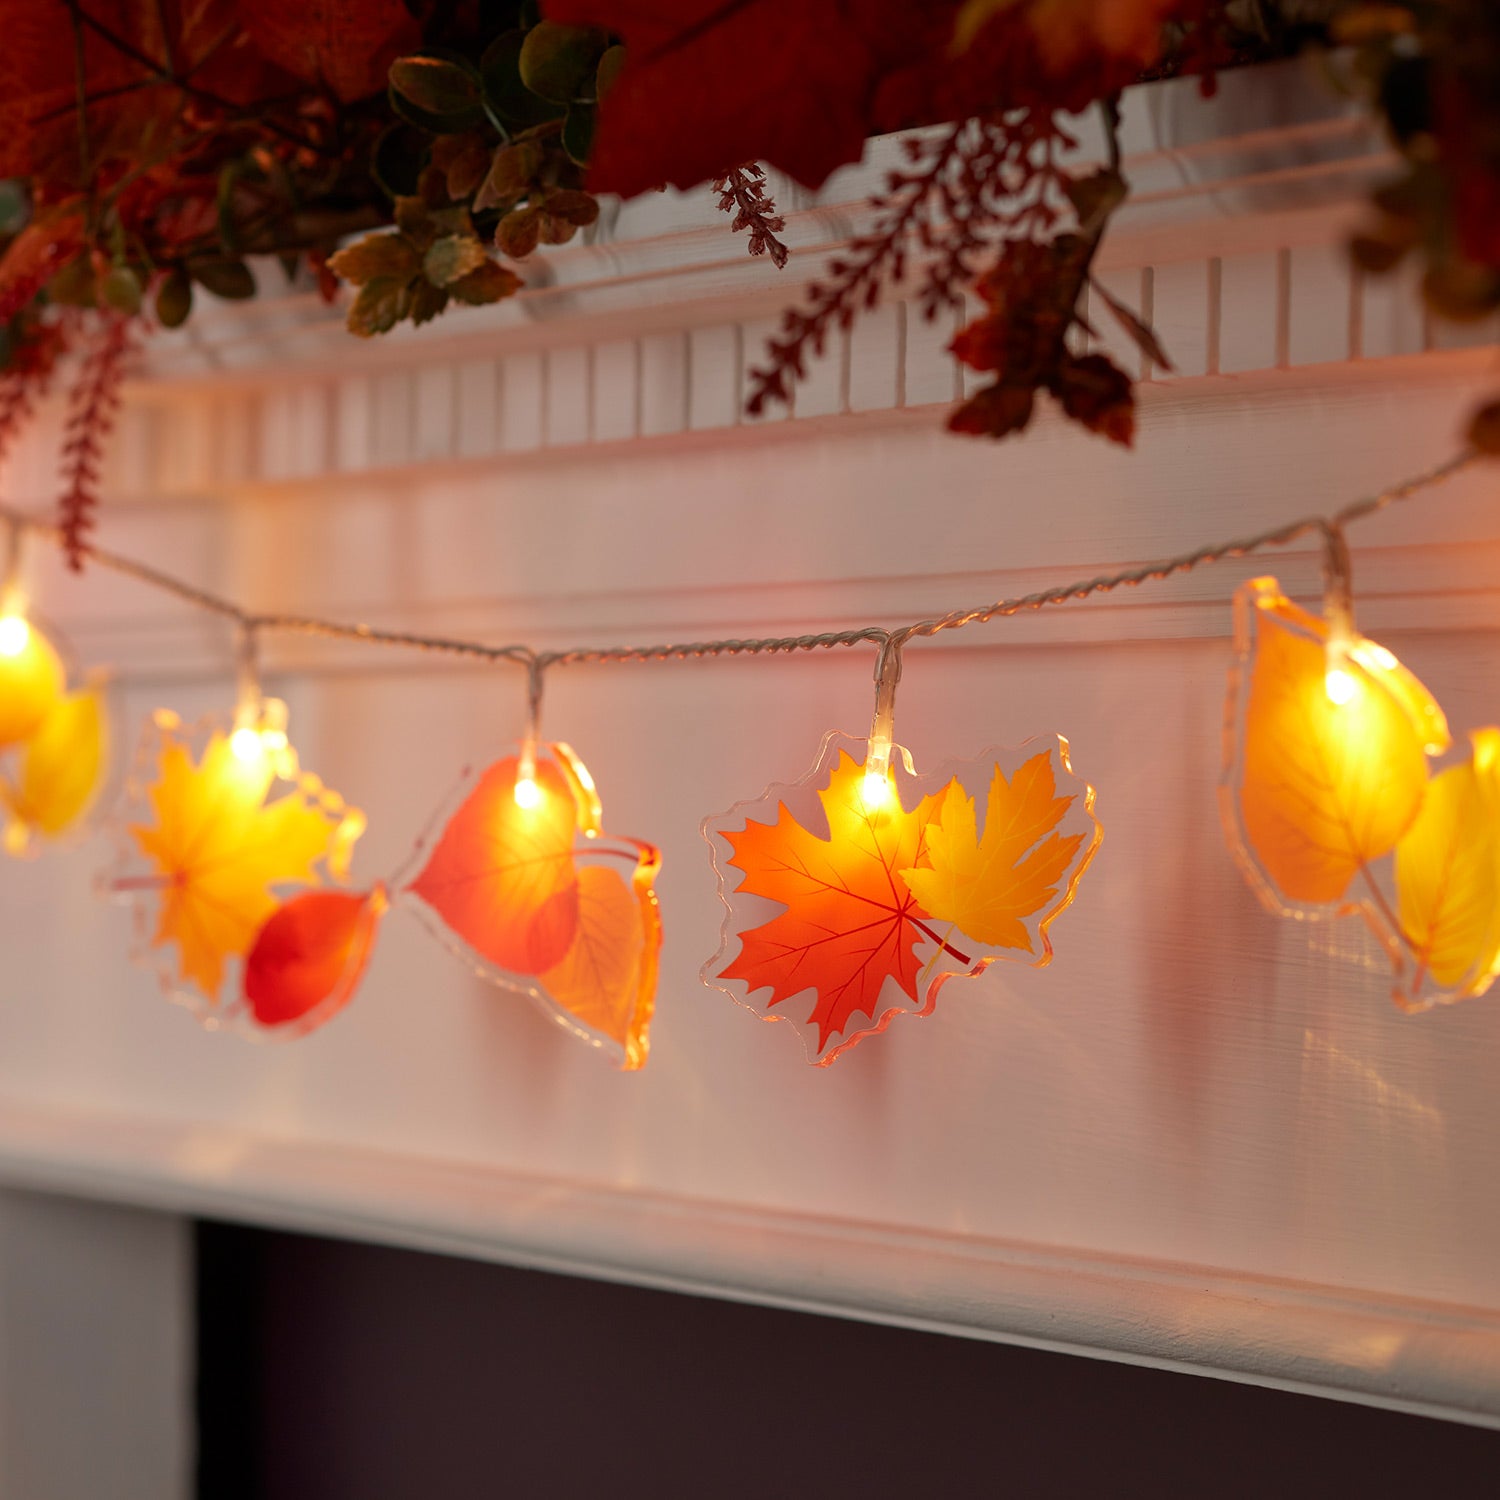 Guirlande lumineuse en forme de feuille d'érable, 4,5 m, 30 LED, décoration  d'automne